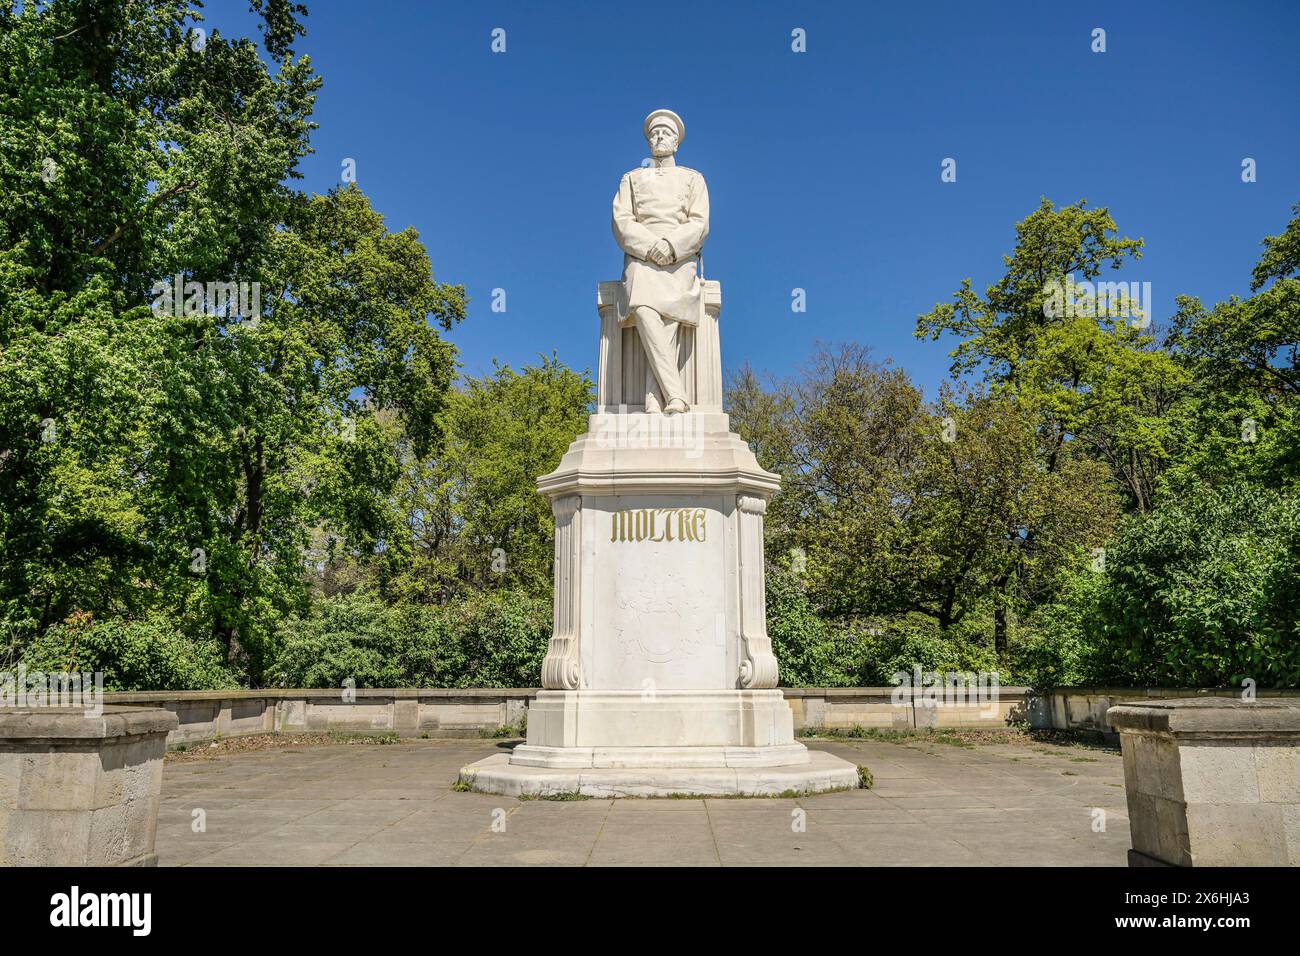 Denkmal, Helmuth Karl Bernhard von Moltke, Großer Stern, Tiergarten, Mitte, Berlin, Deutschland Stock Photo